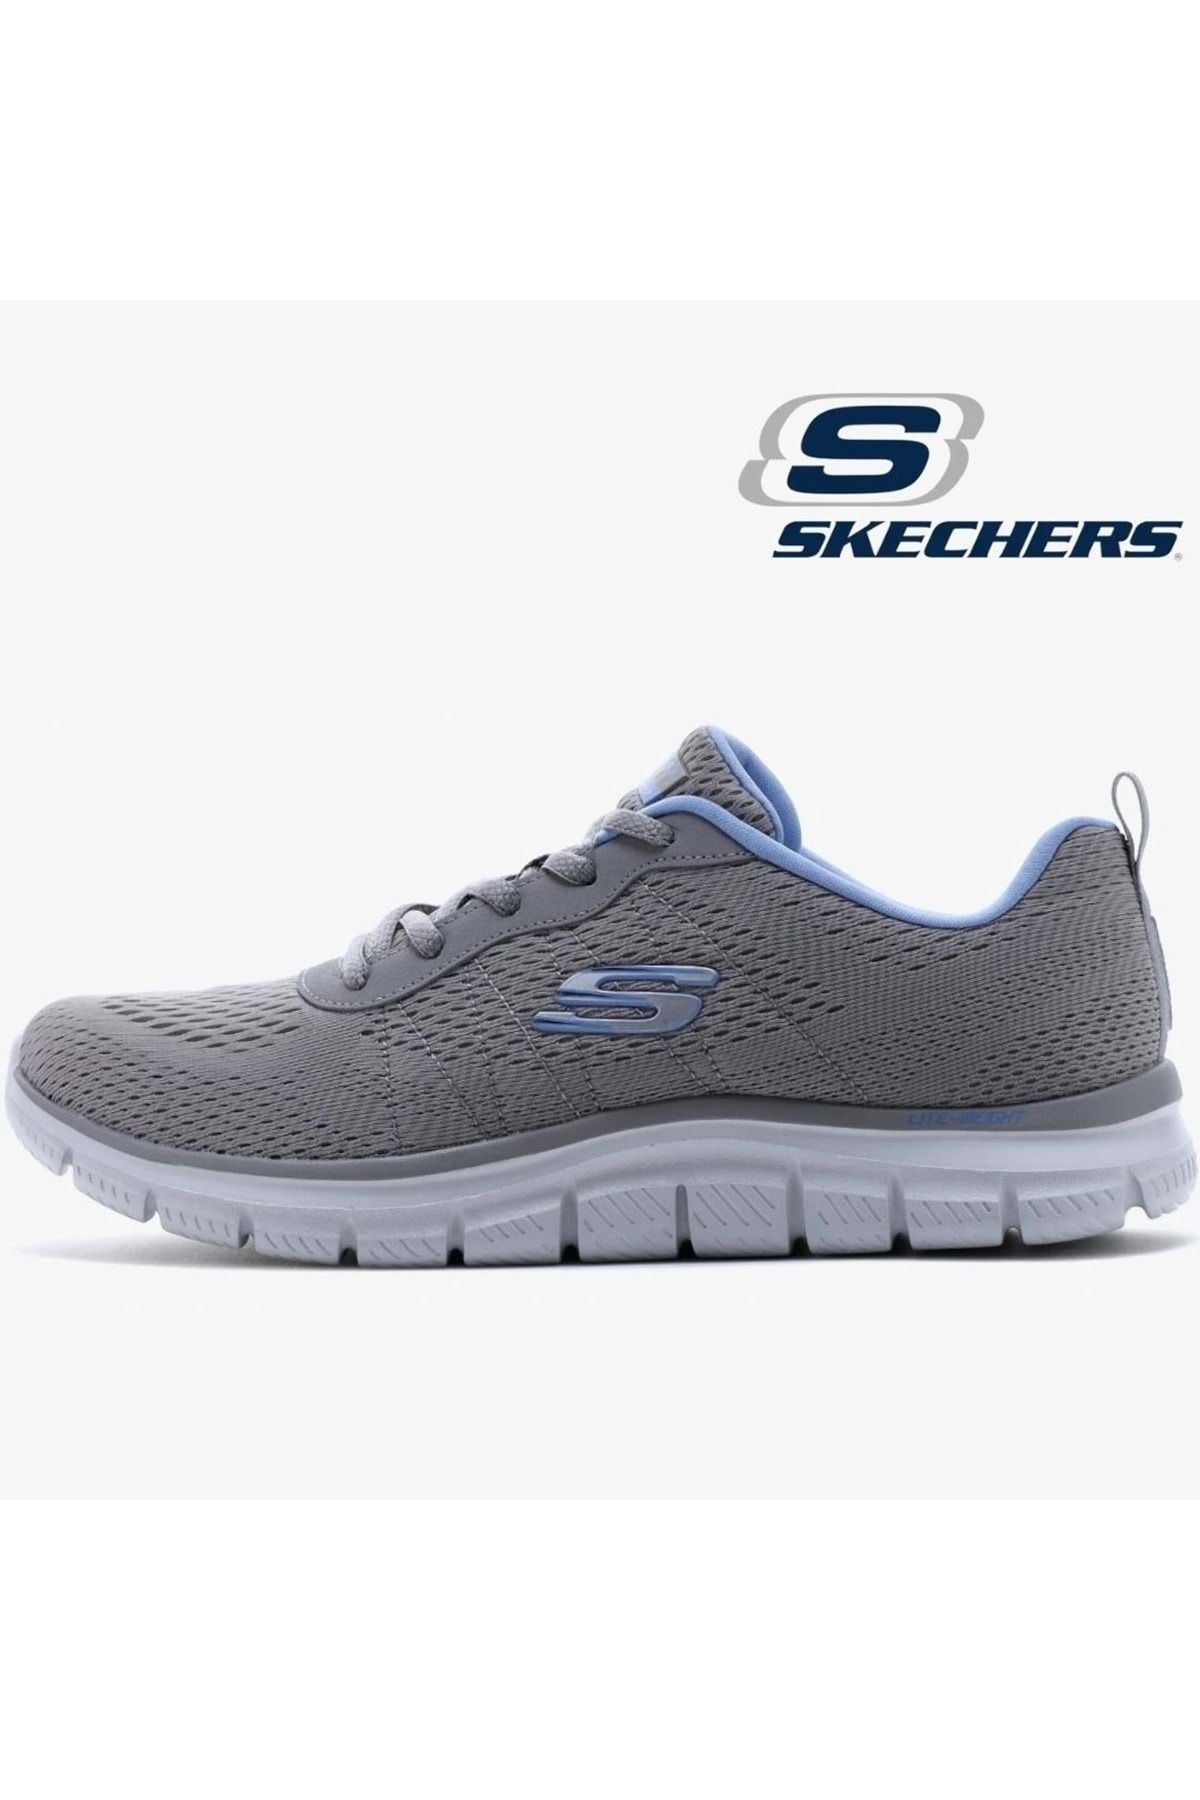 Skechers Track-new Staple 150141tk Unisex Spor Ayakkabı Gri?